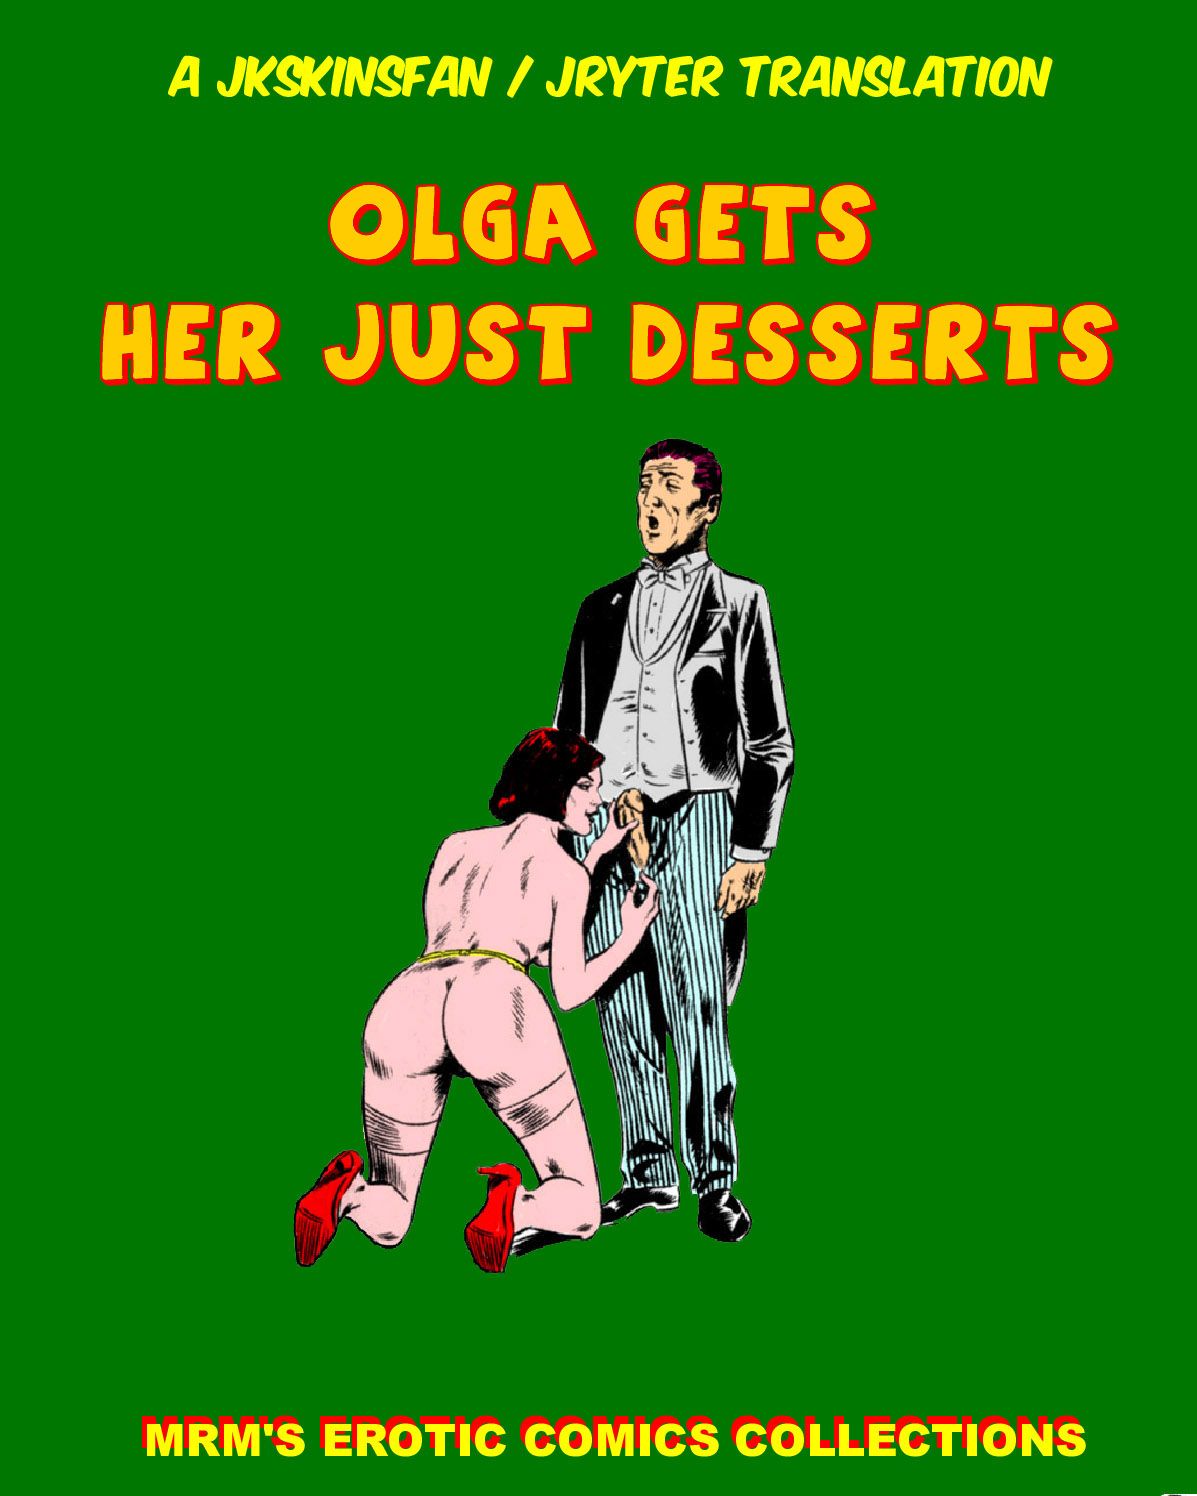 OLGA GETS HER JUST DESSERTS - A JKSKINSFAN / JRYTER TRANSLATION 1